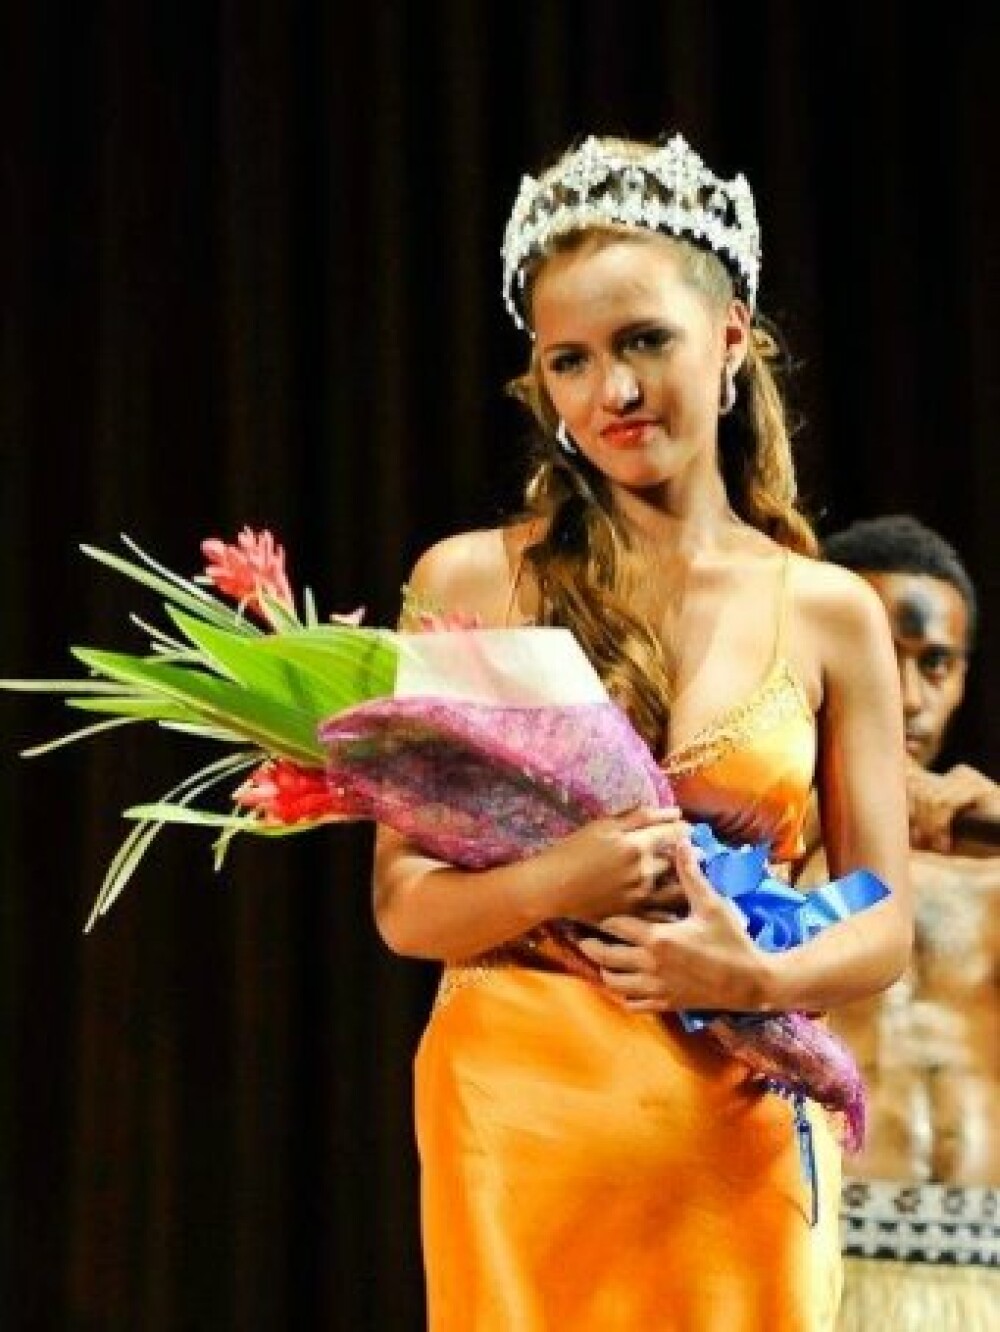 A pierdut coroana Miss Fiji pentru ca era prea alba si prea blonda. Explicatia organizatorilor - Imaginea 1